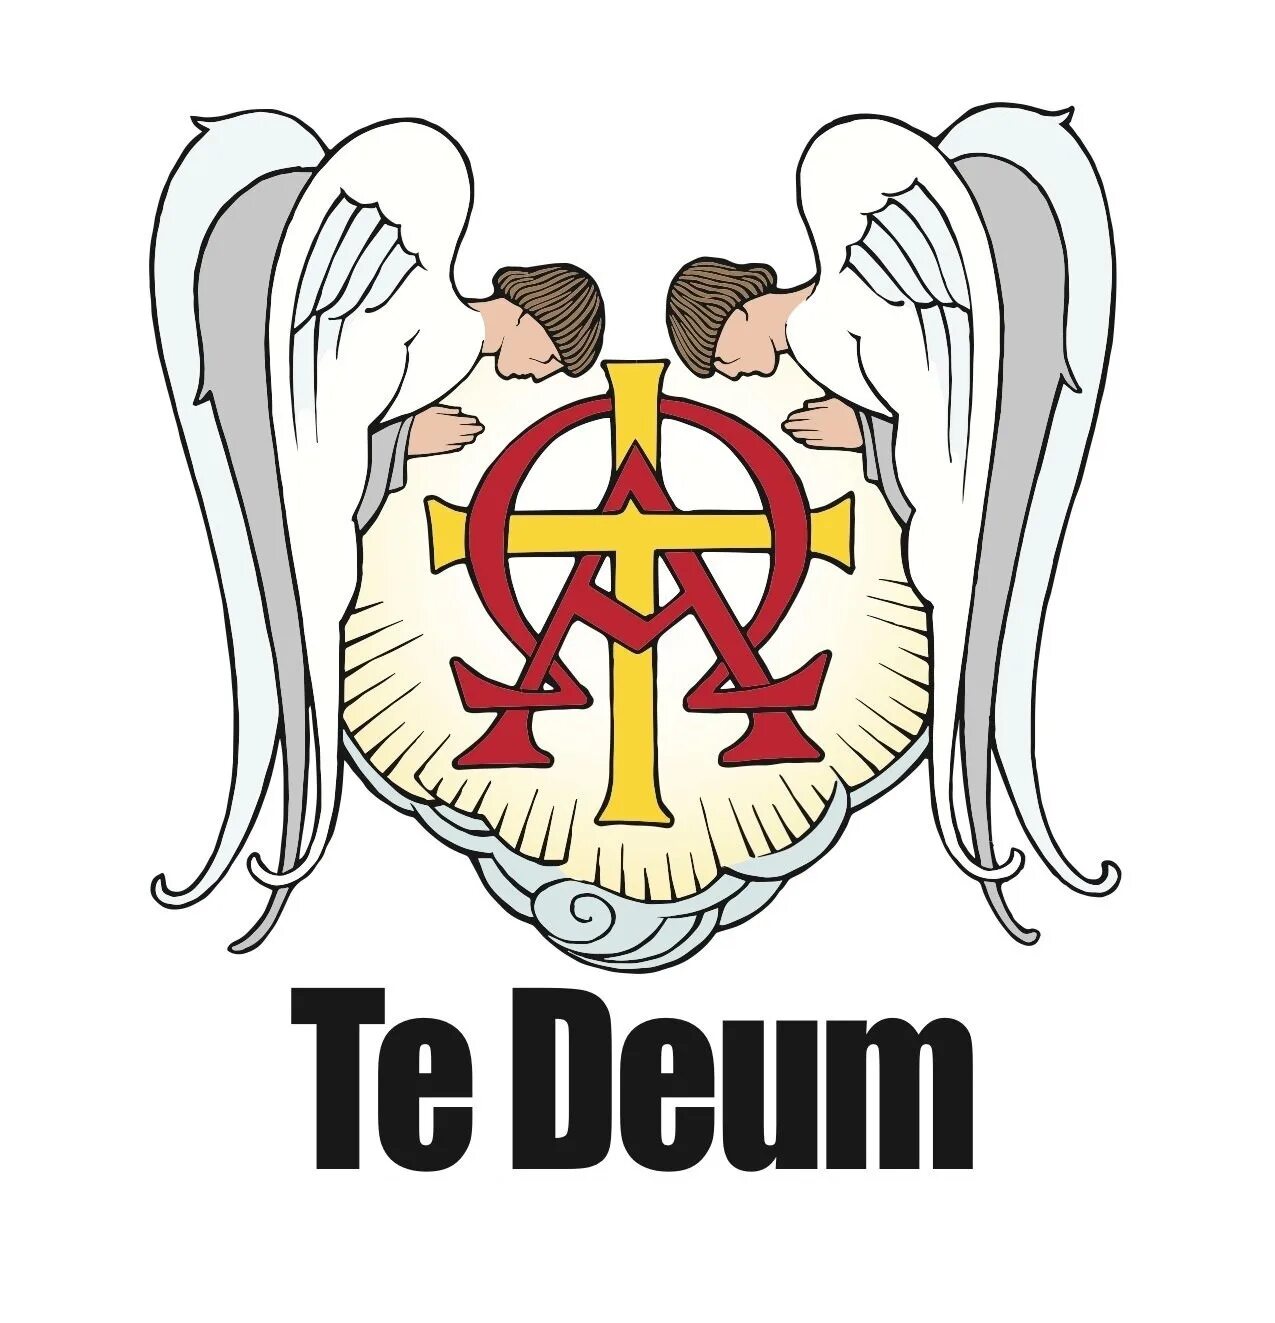 Te deum. Hortus Musicus - te Deum. Te Deum это. Deum Art. Te Deum - Hymnus (Tonus Monasticus).